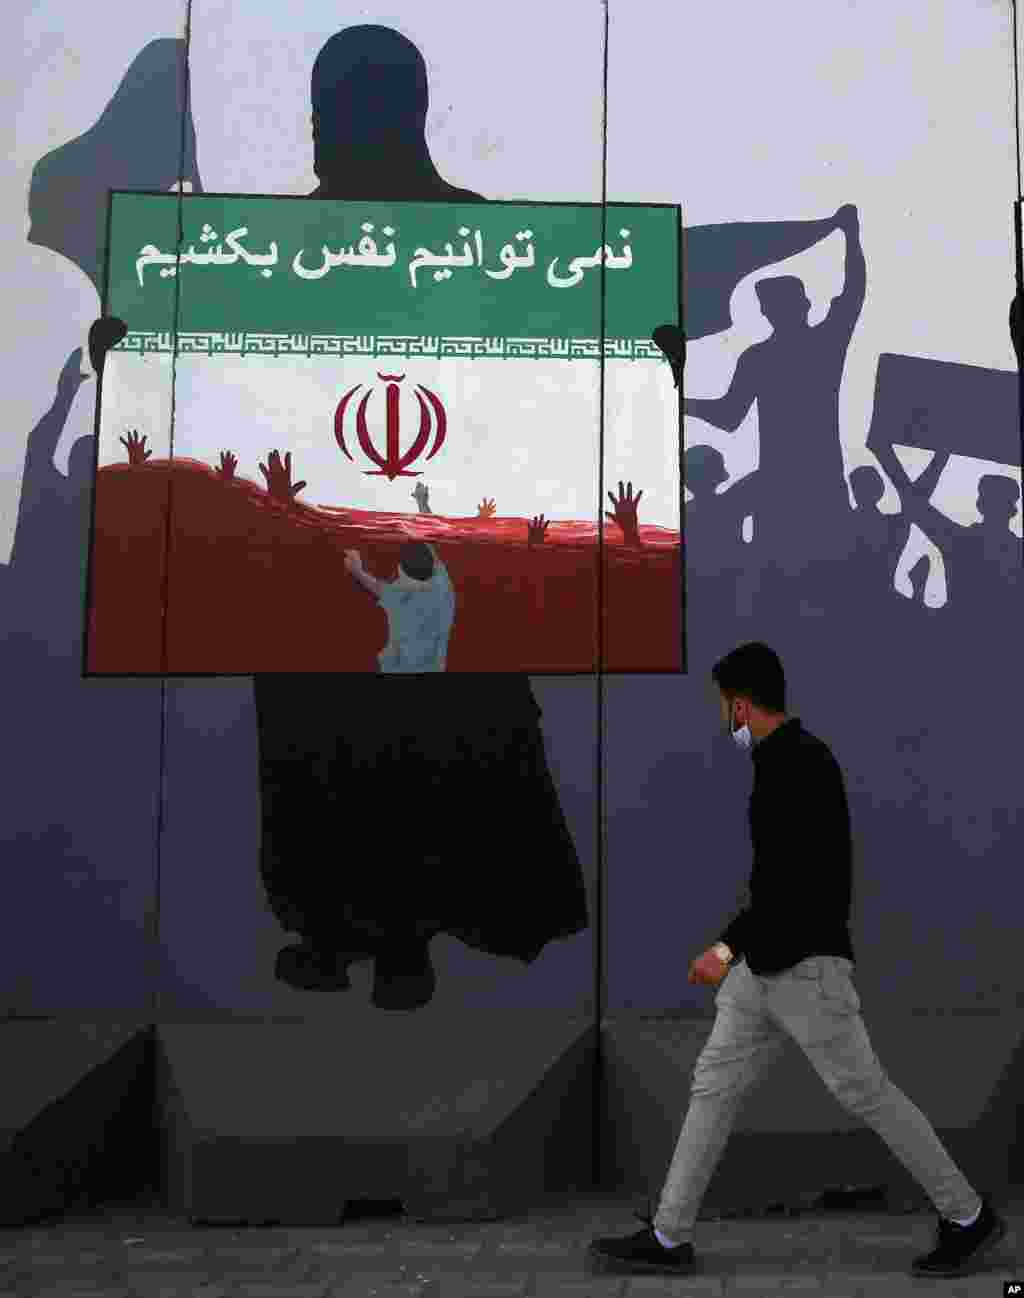 بعد از مرگ چند کارگر و مهاجر افغان در ایران، گروهی از مردم افغانستان در اعتراض به رفتار بد پلیس با هموطنان خود، در کابل مقابل سفارت جمهوری اسلامی تجمع کردند. آنها عکسی گذاشتند که روی پرچم جمهوری اسلامی نوشته شده: &#171;نمی‌توانیم نفس بکشیم&#187;. 